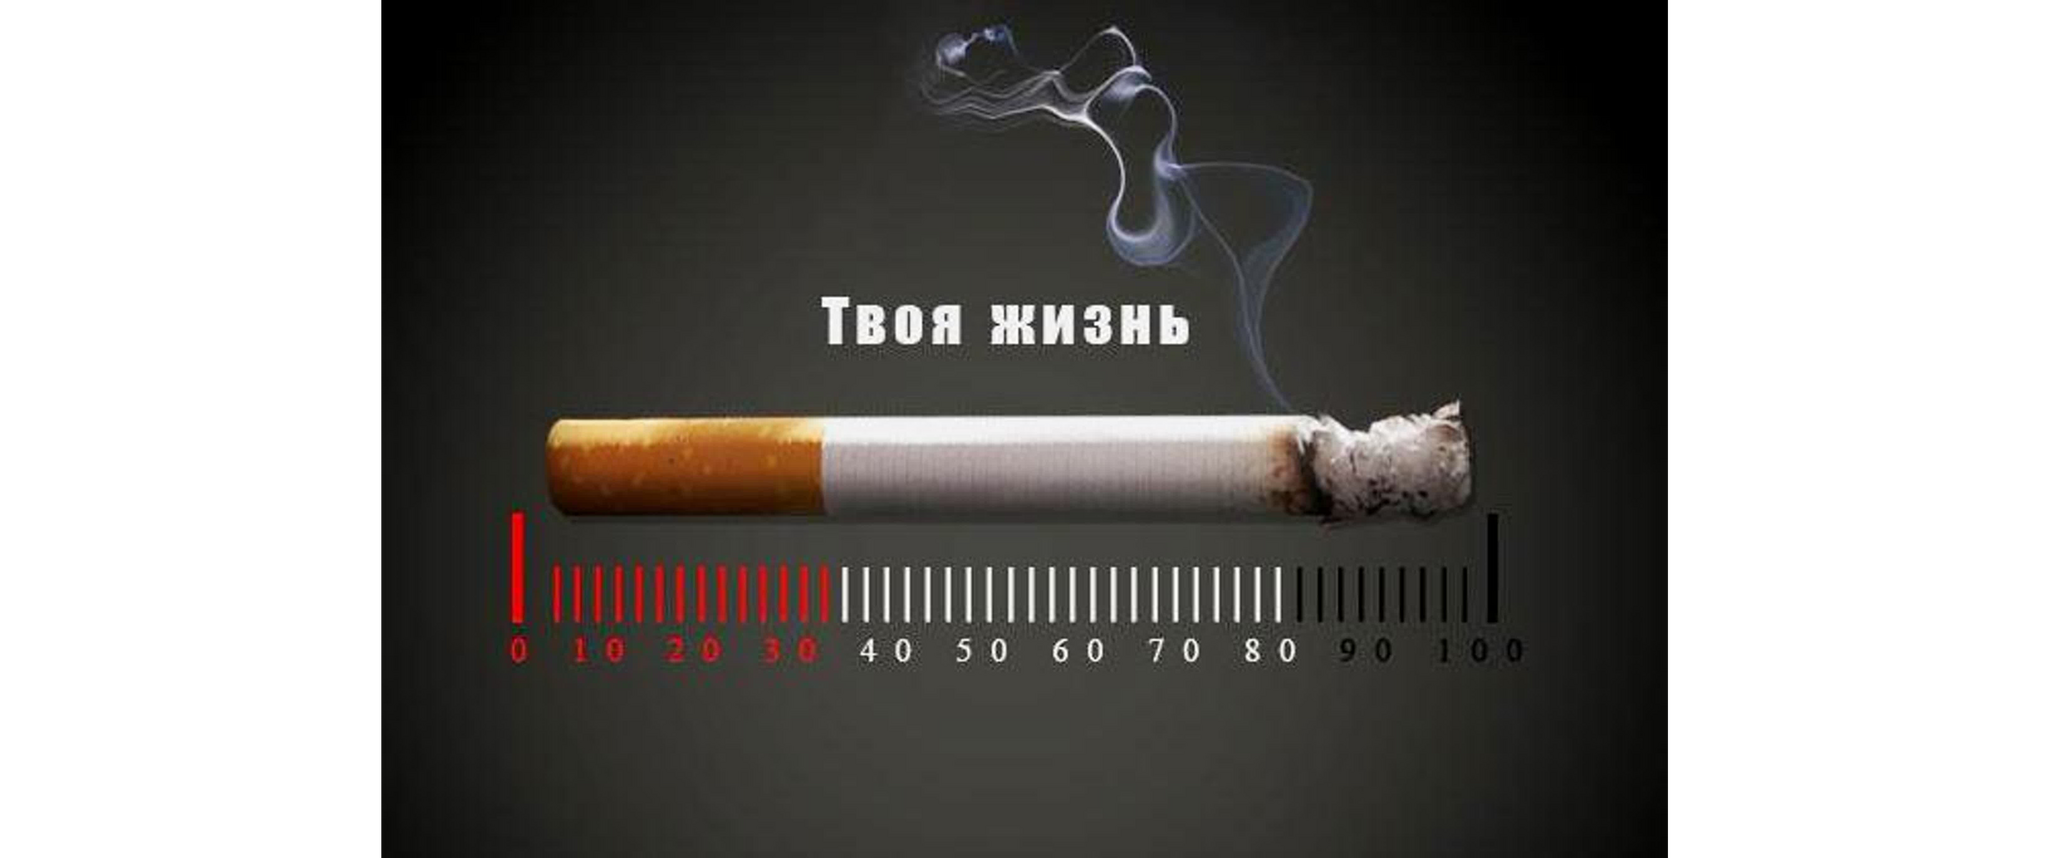 SMOKING AND LIFE LONGER - My, Quit smoking, Smoking, Smoking control, Bad habits, Tobacco, Longpost